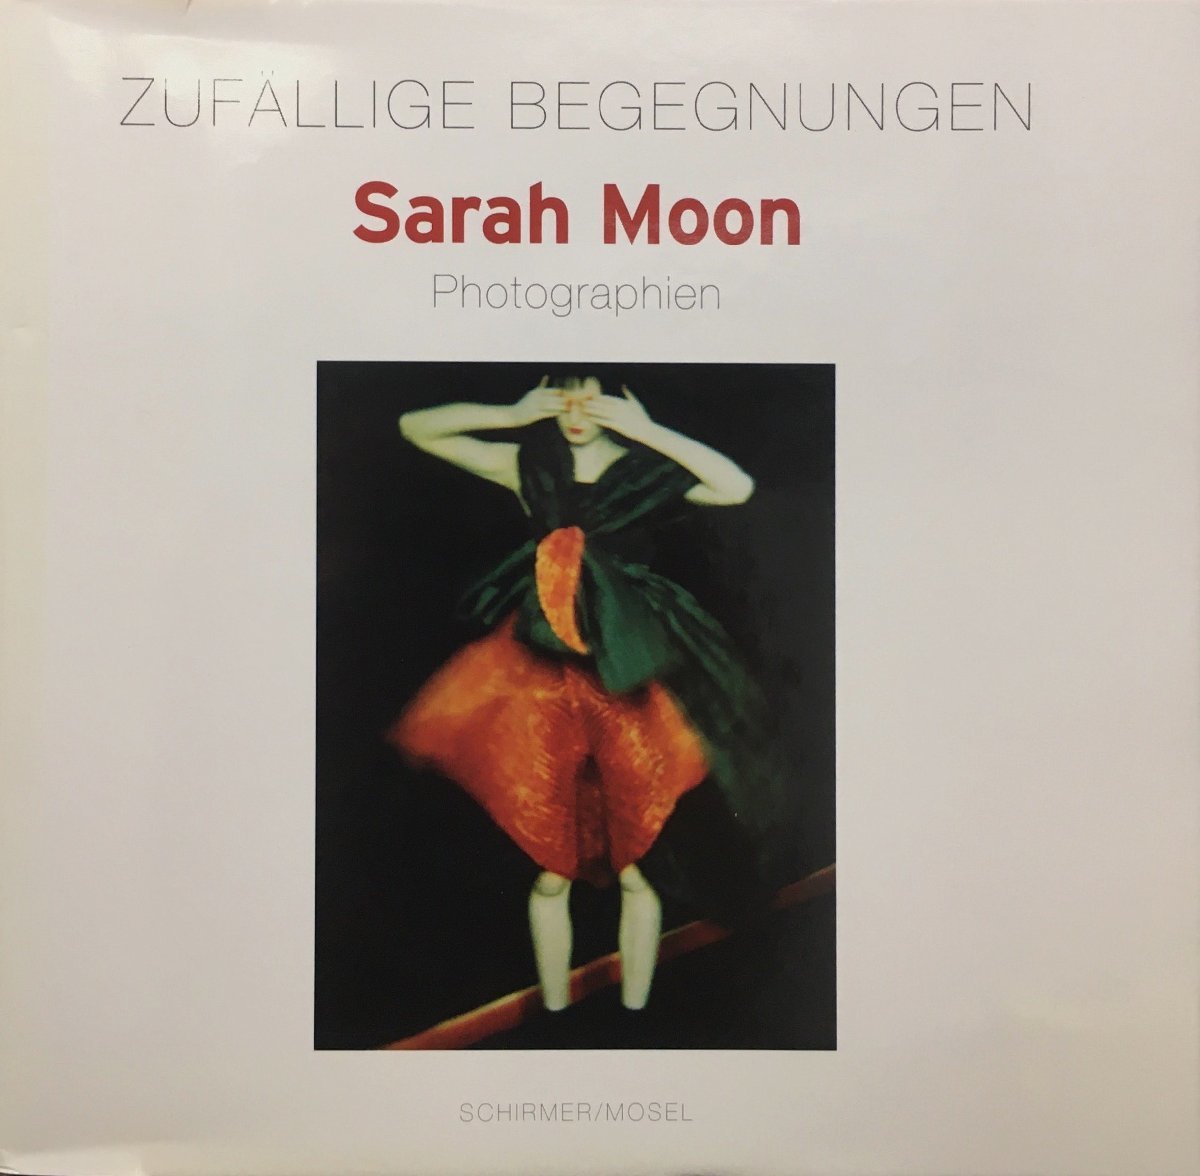 写真集『Zufallige Begegnungen Sarah Moon サラ・ムーン』Schirmer/Mosel 2001年